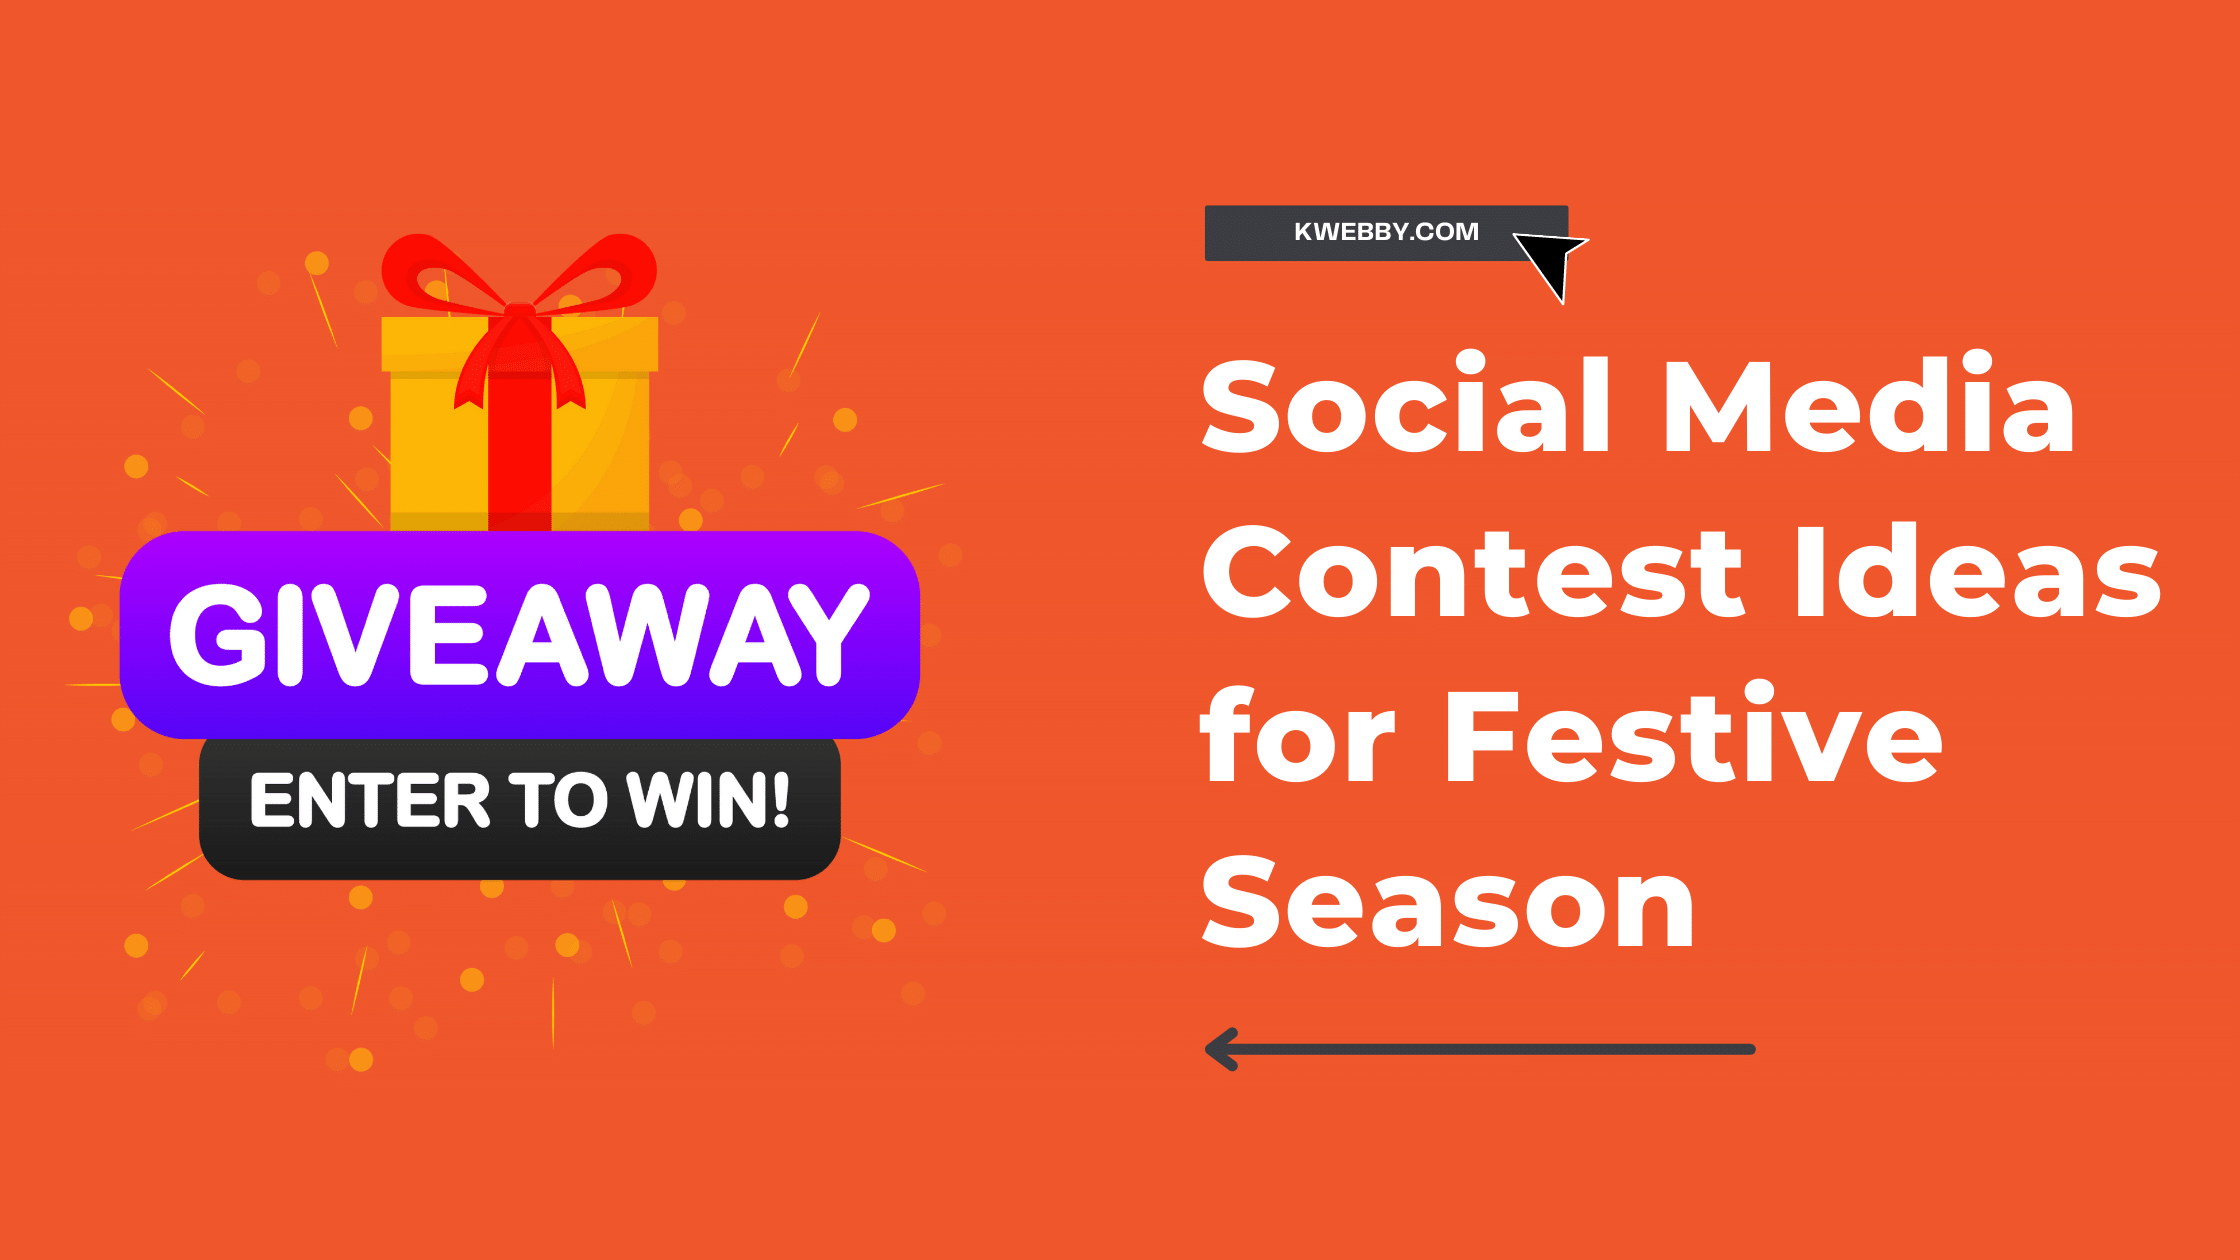 10 Social Media Contest Ideas for Festive Season